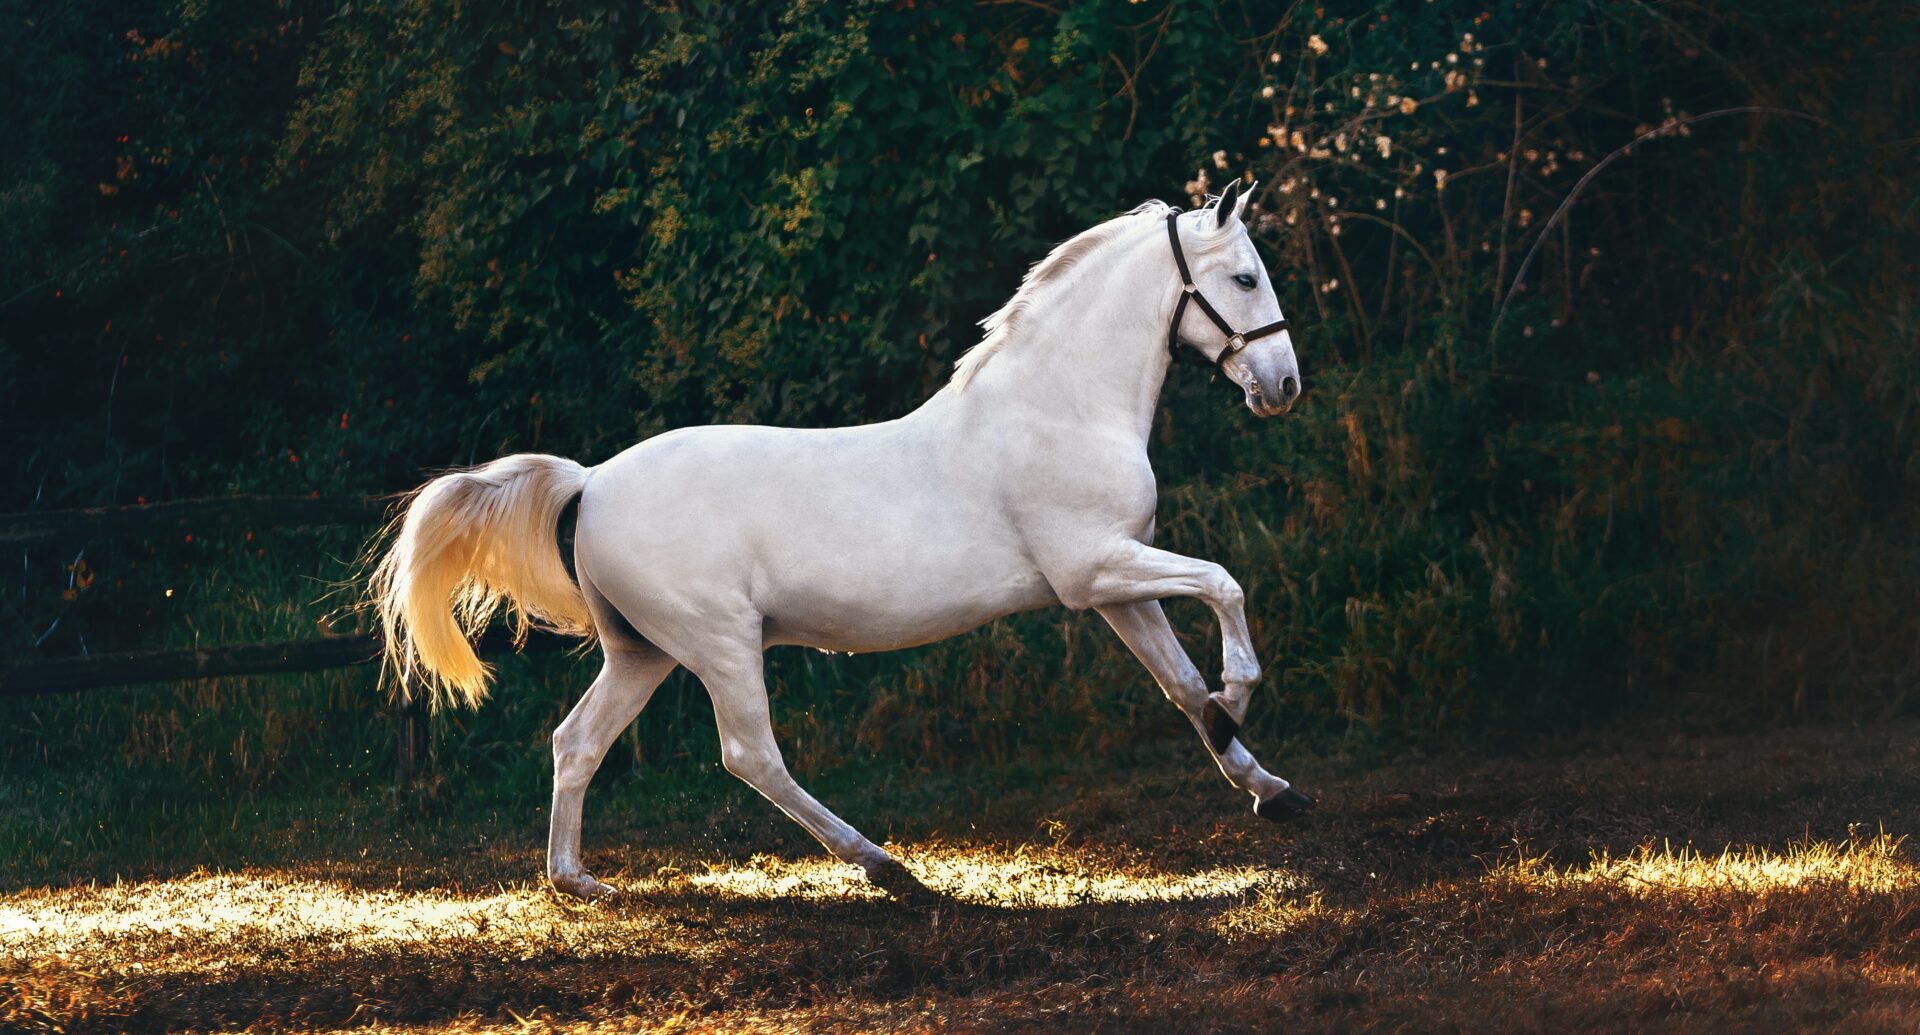 Marco cavallo, un simbolo di libertà e autodeterminazione